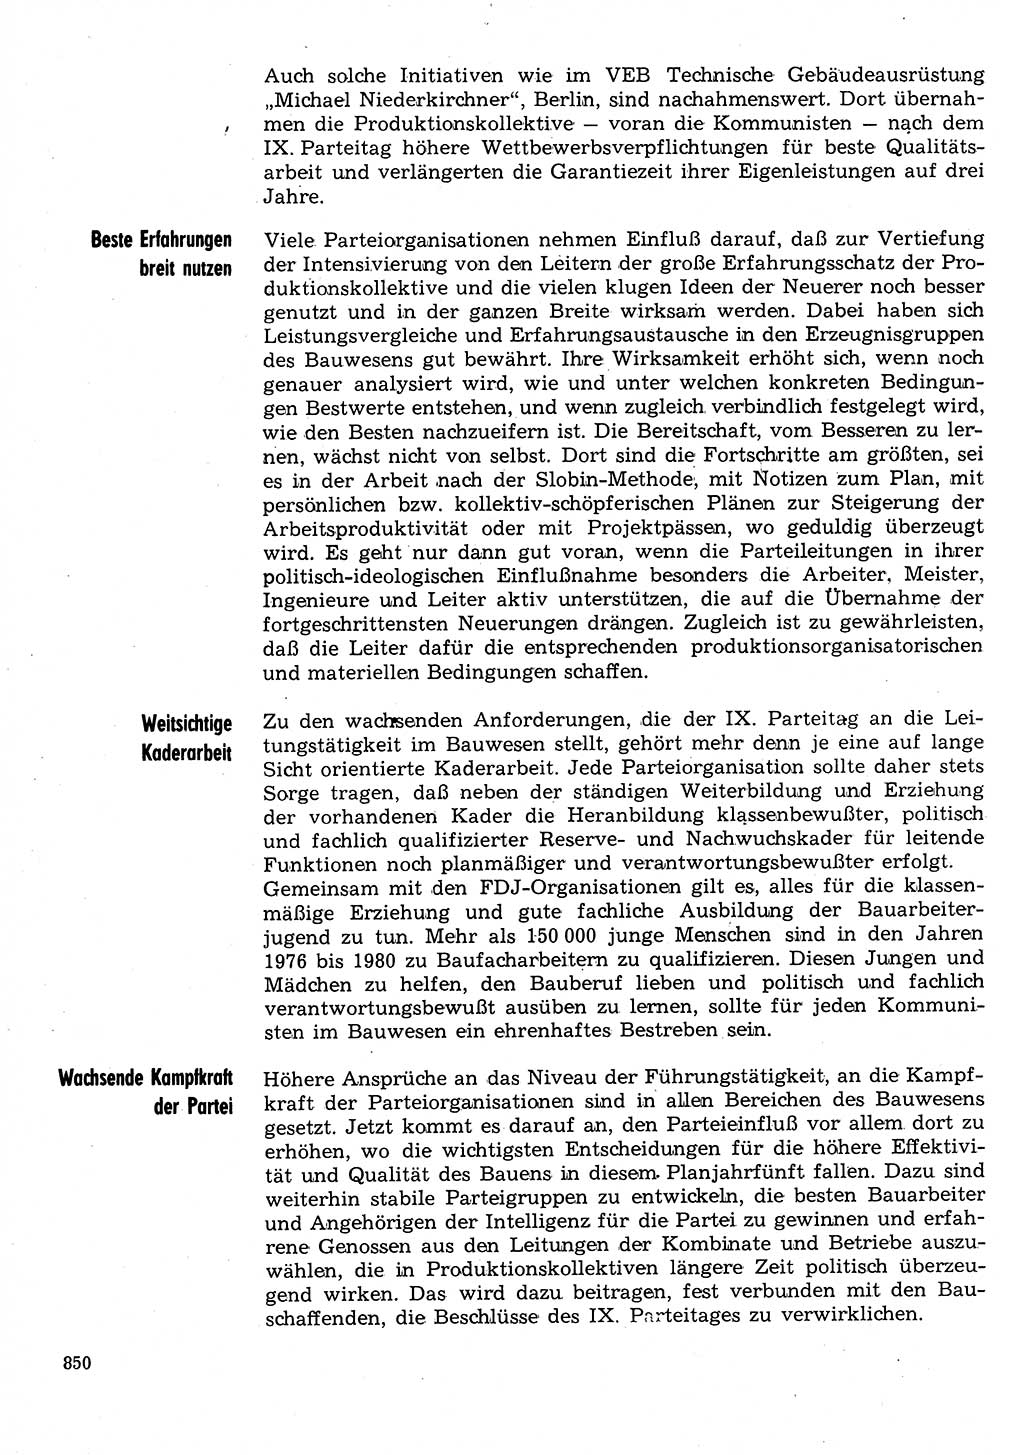 Neuer Weg (NW), Organ des Zentralkomitees (ZK) der SED (Sozialistische Einheitspartei Deutschlands) für Fragen des Parteilebens, 31. Jahrgang [Deutsche Demokratische Republik (DDR)] 1976, Seite 850 (NW ZK SED DDR 1976, S. 850)